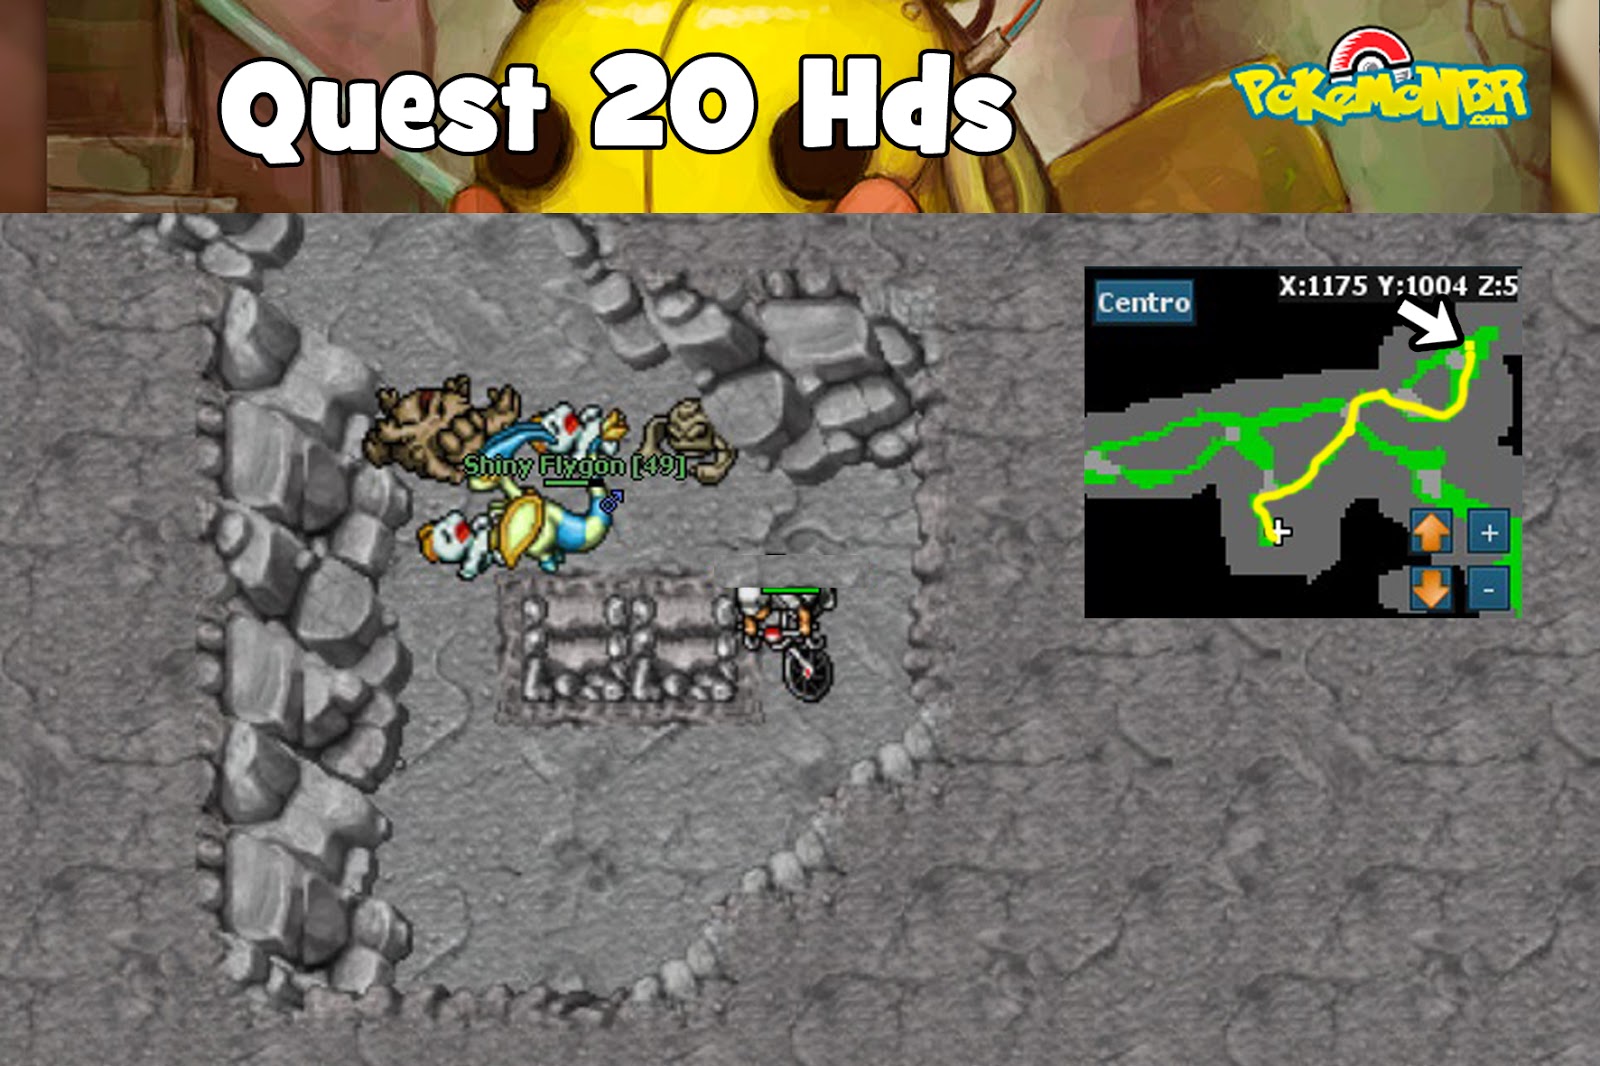 20 Hds Quest  Blog PokemonBR